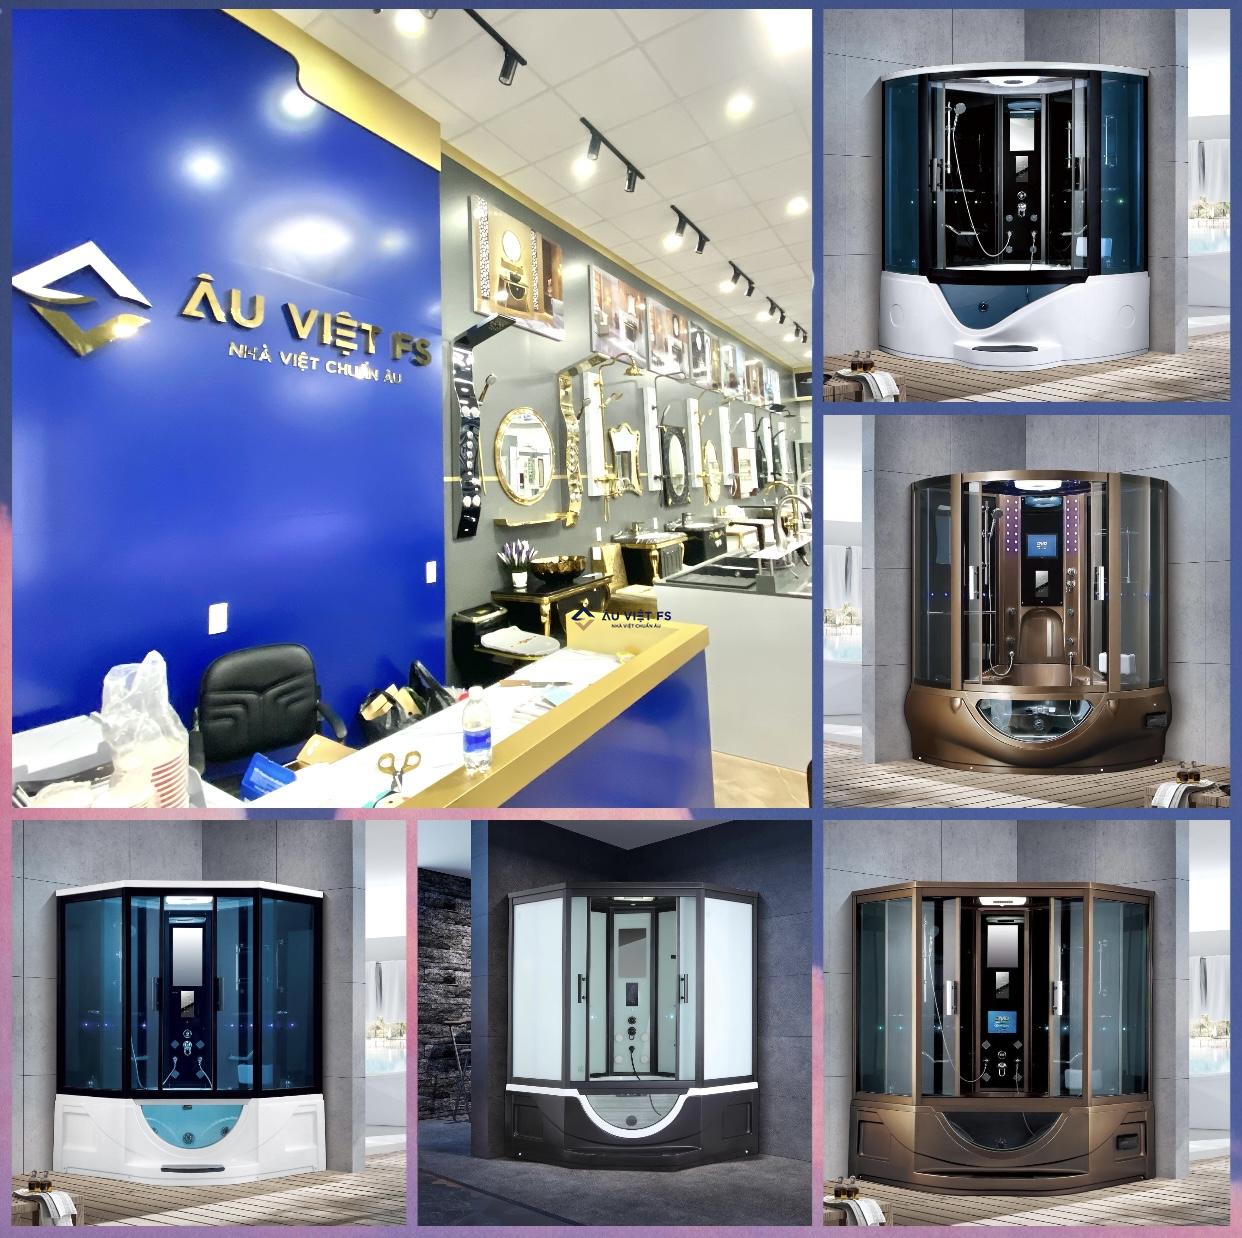 Âu Việt FS, Phòng xông hơi, phòng tắm xông hơi, Showroom thiết bị vệ sinh, Phòng xông hơi cao cấp